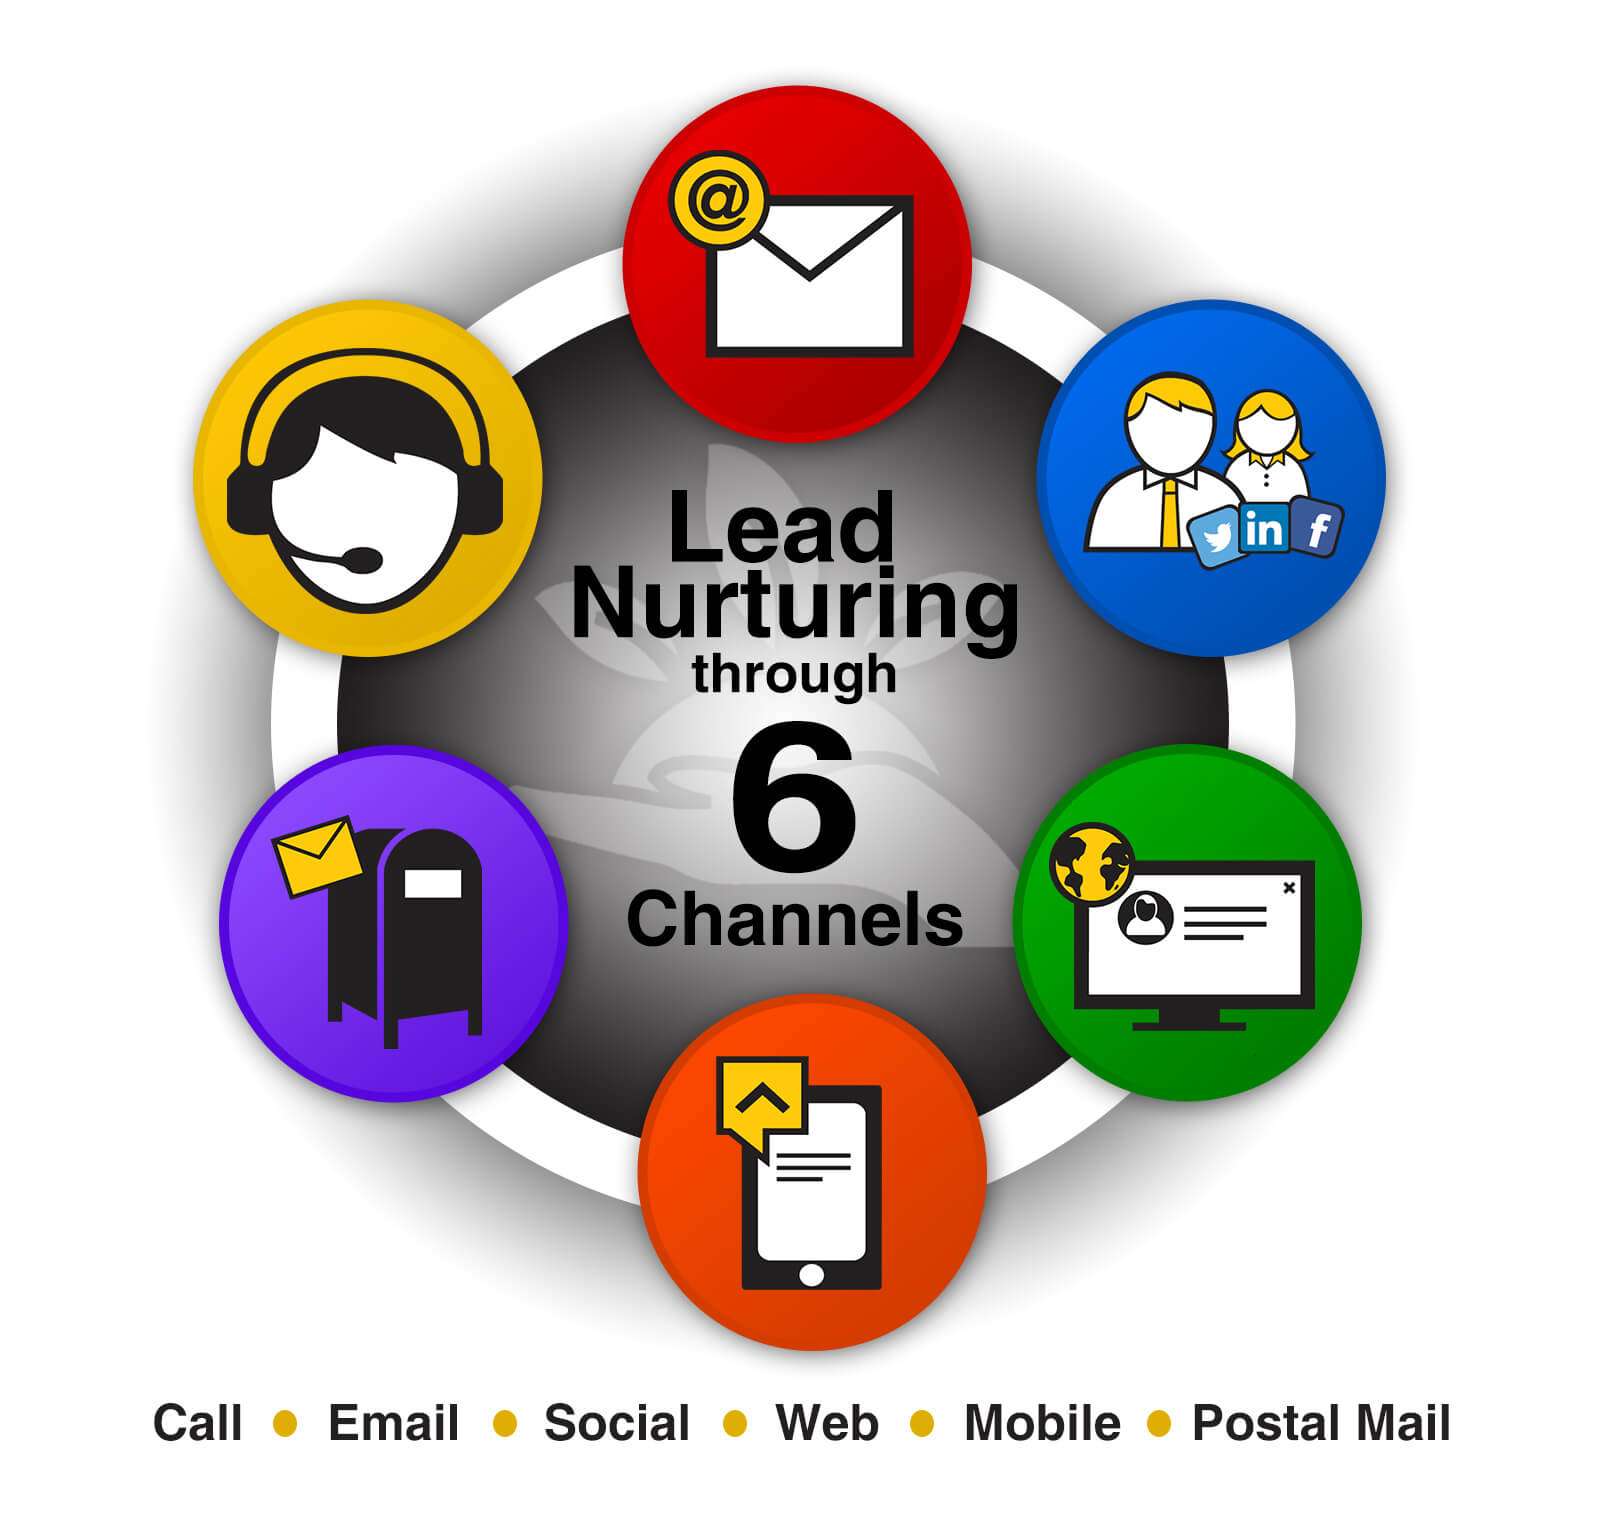 Lead Nurturing through 6 channels